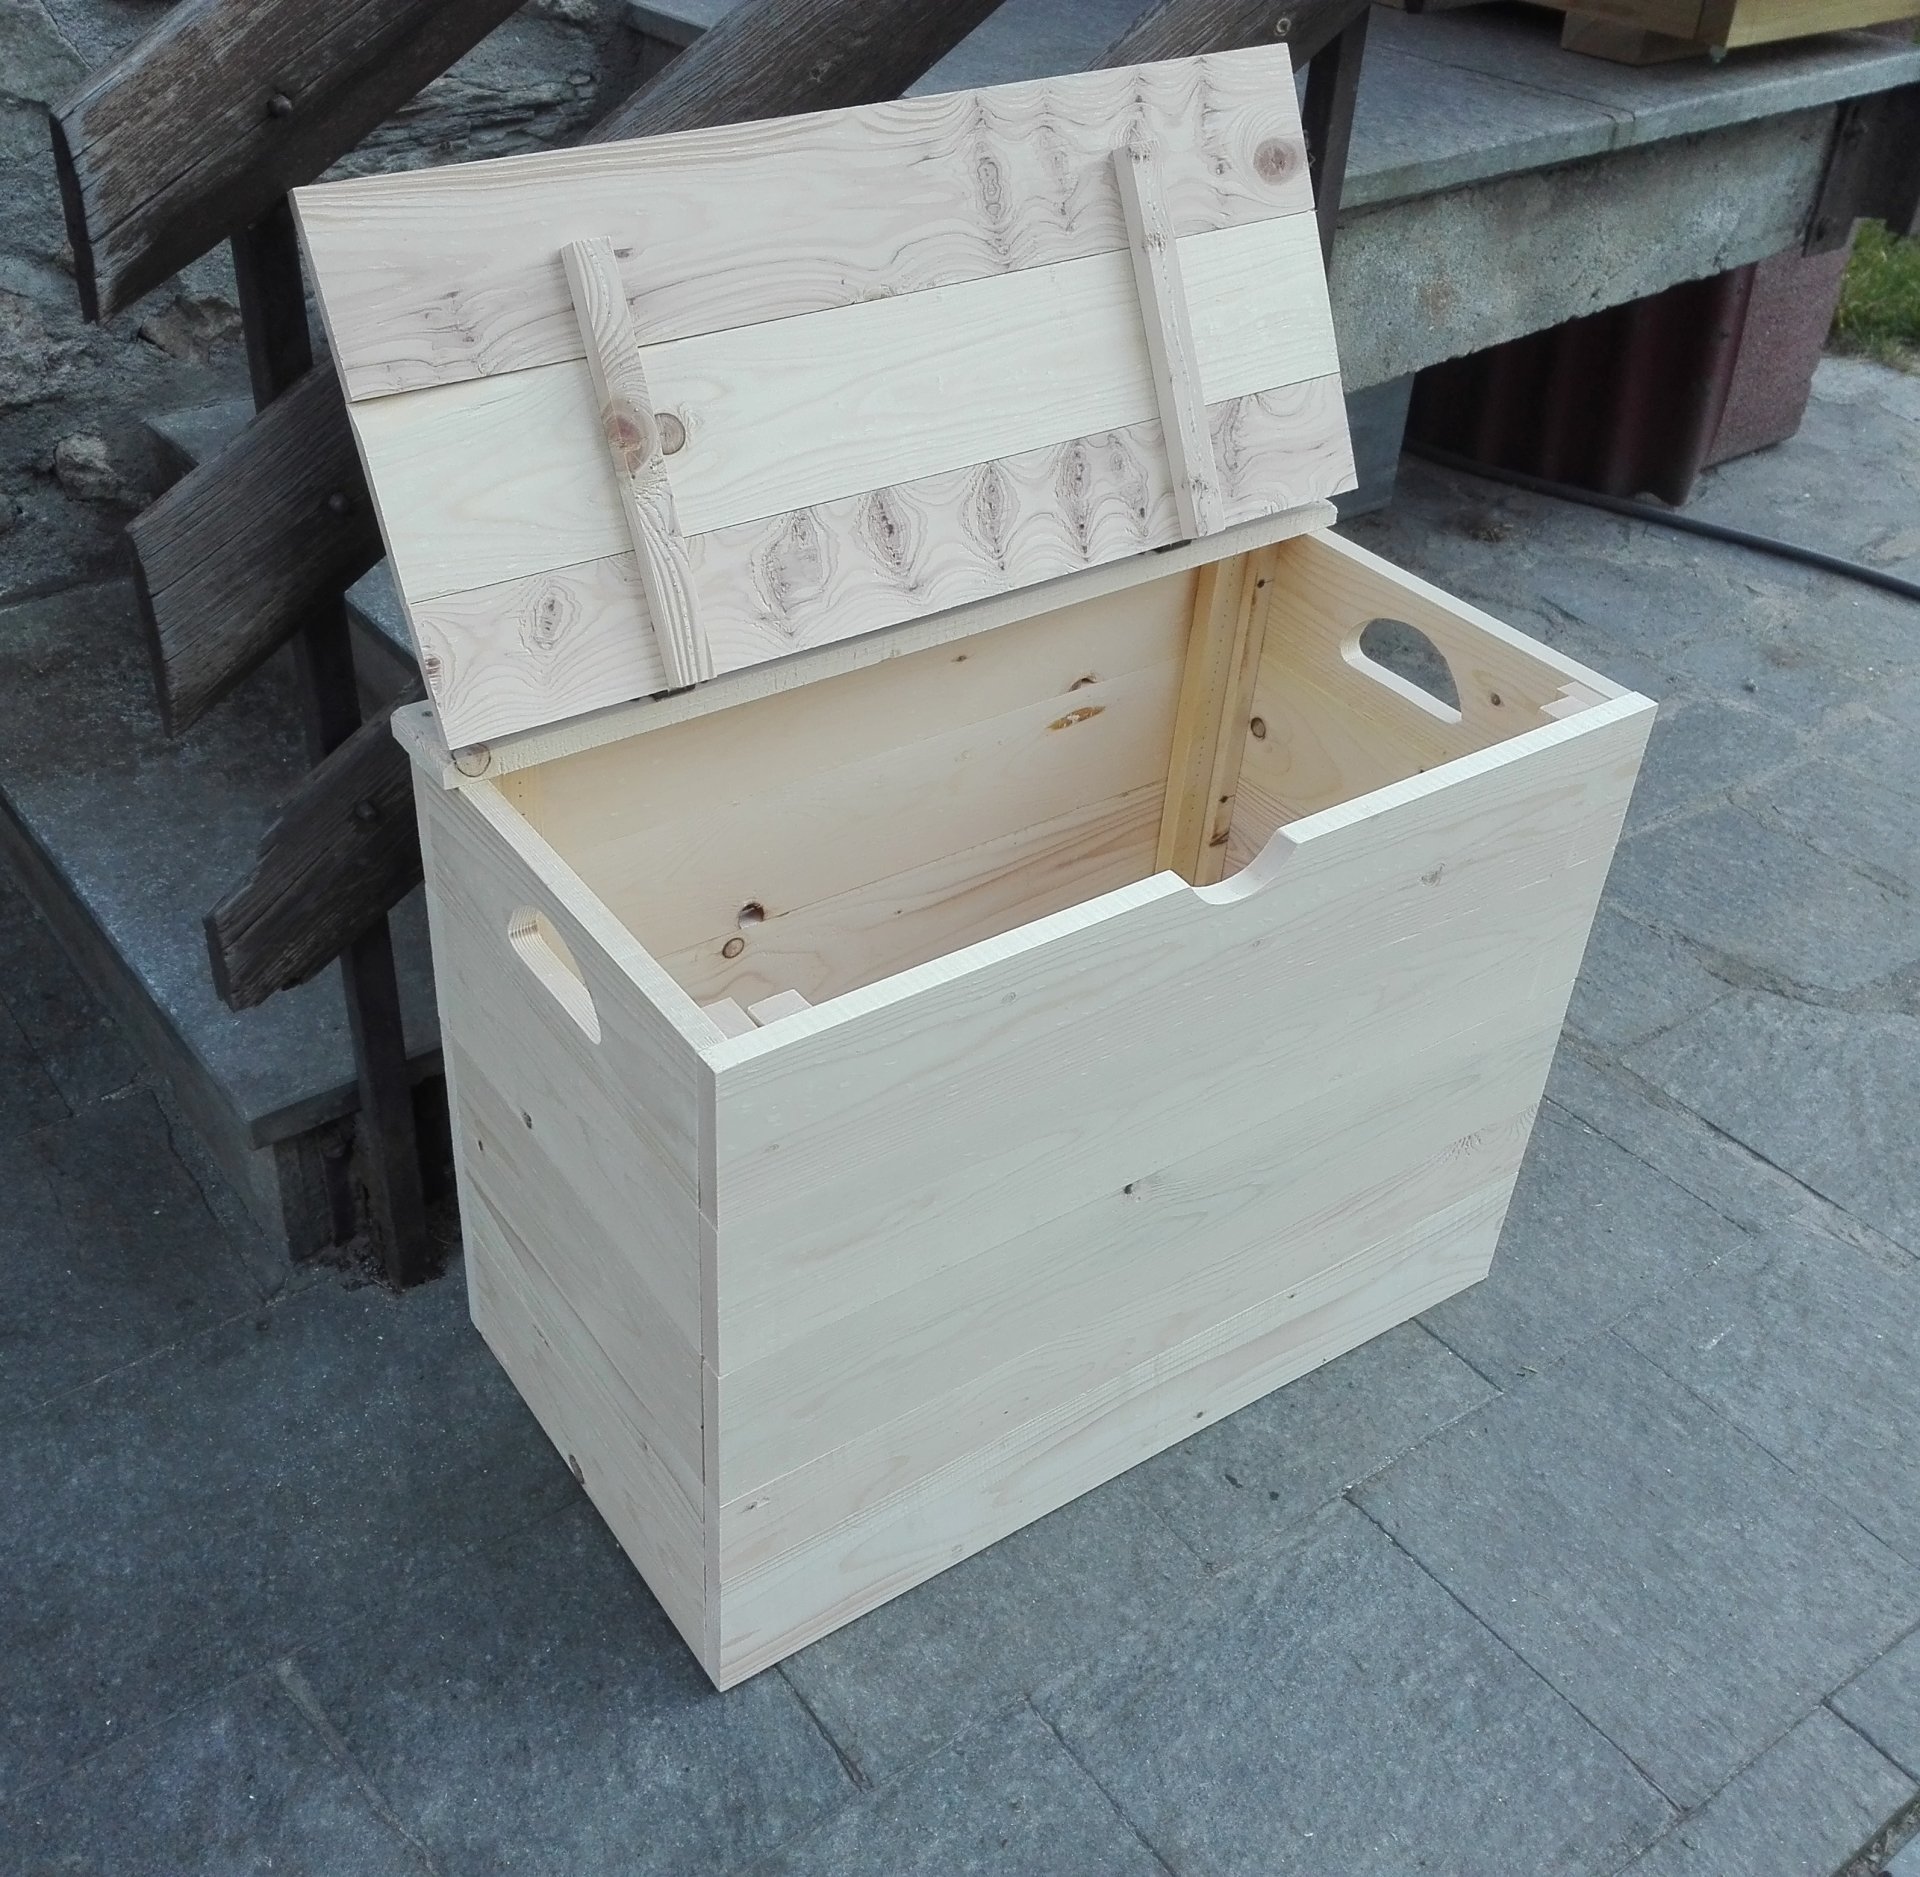 Baule cassetta contenitore da interno in legno di pino 54x50x58 cm